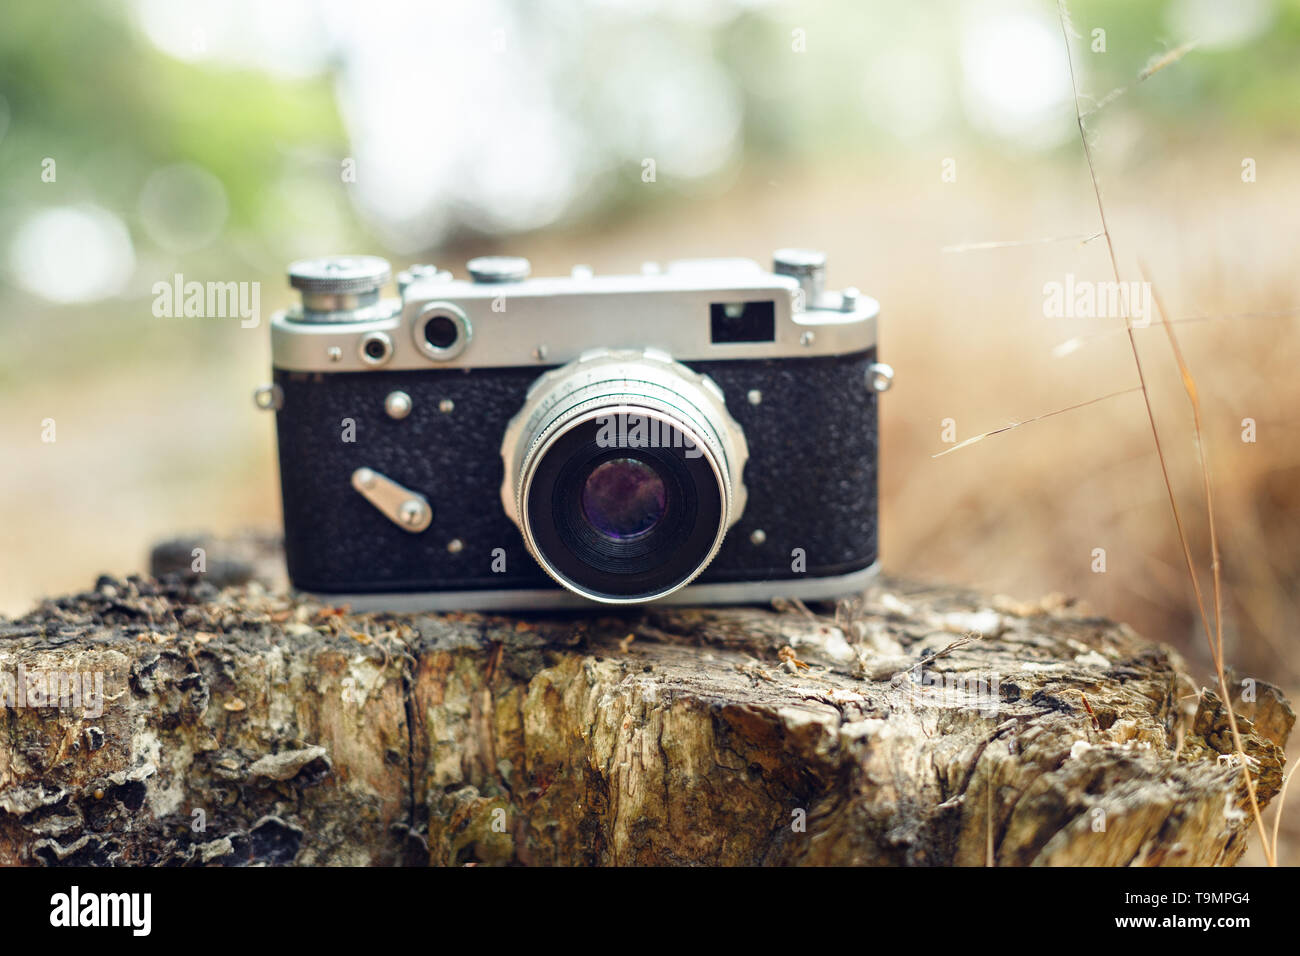 Ancien appareil photo analogique l'appareil photo se trouve sur un moignon. Arrière-plan de la nature. Banque D'Images